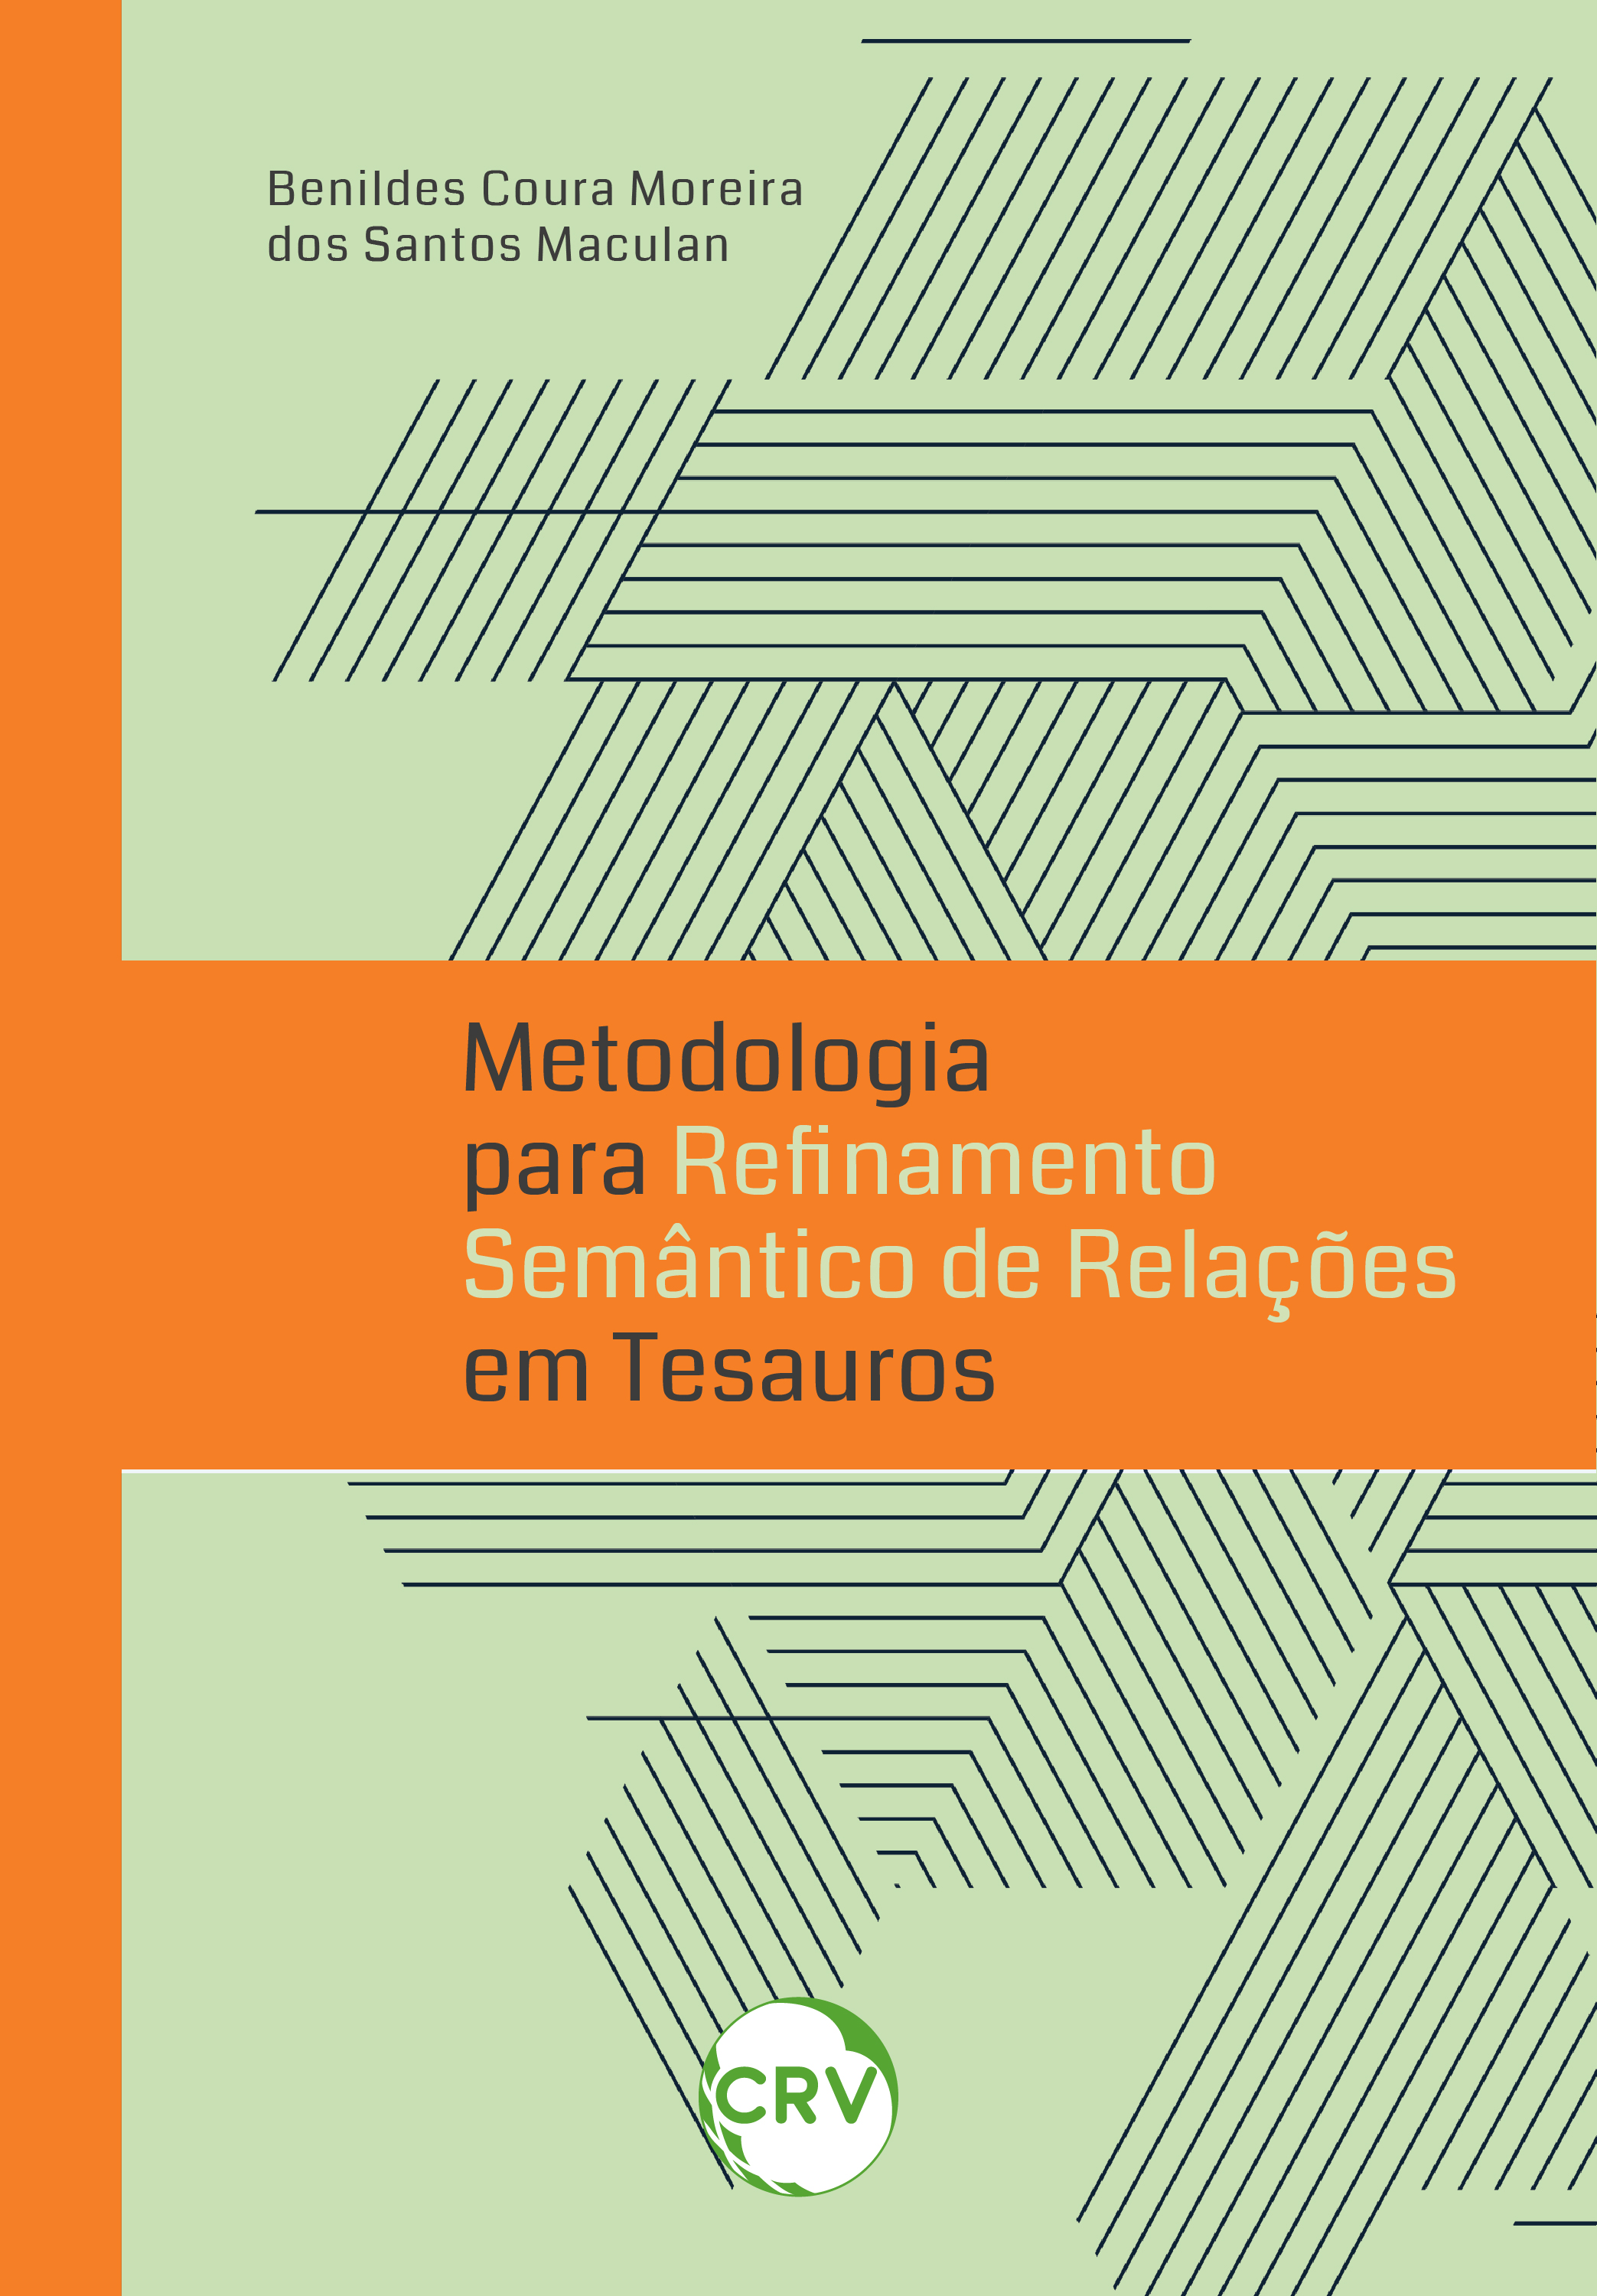 Metodologia para refinamento semântico de relações em tesauros